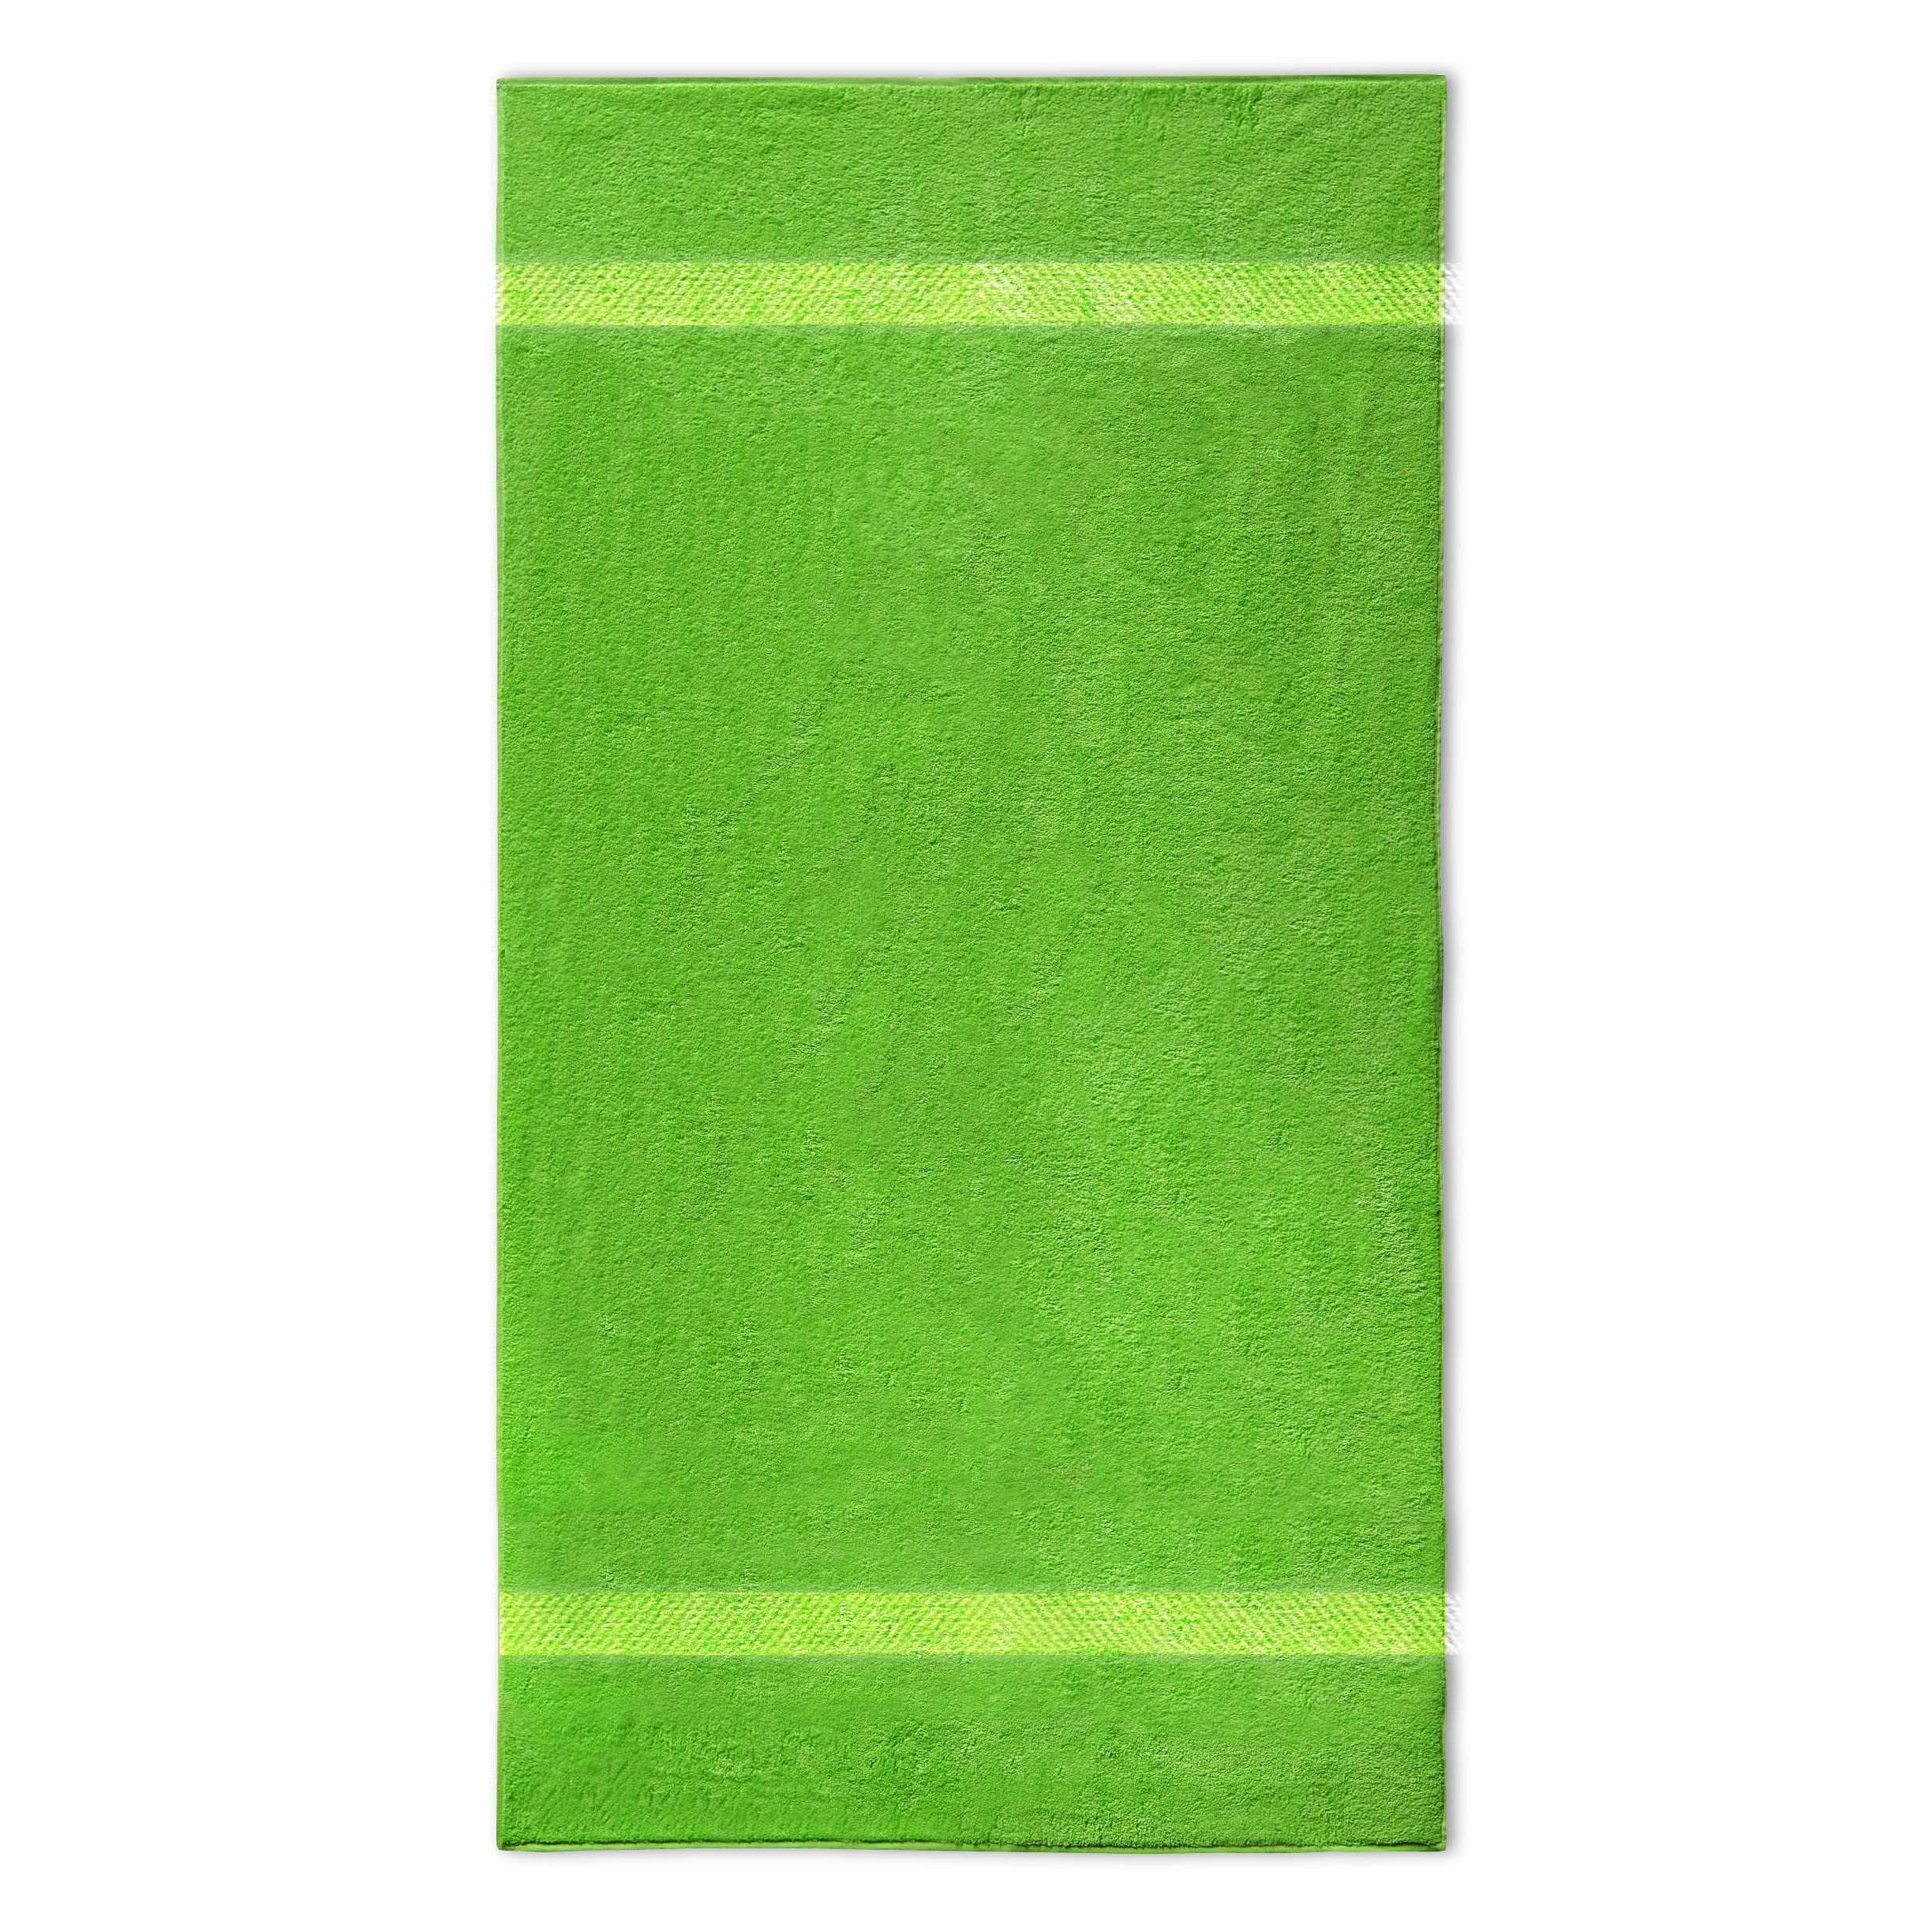 Te Reizen Definitief Handdoek met borduring – 50x100cm – Lime Groen - Lovely Stitches